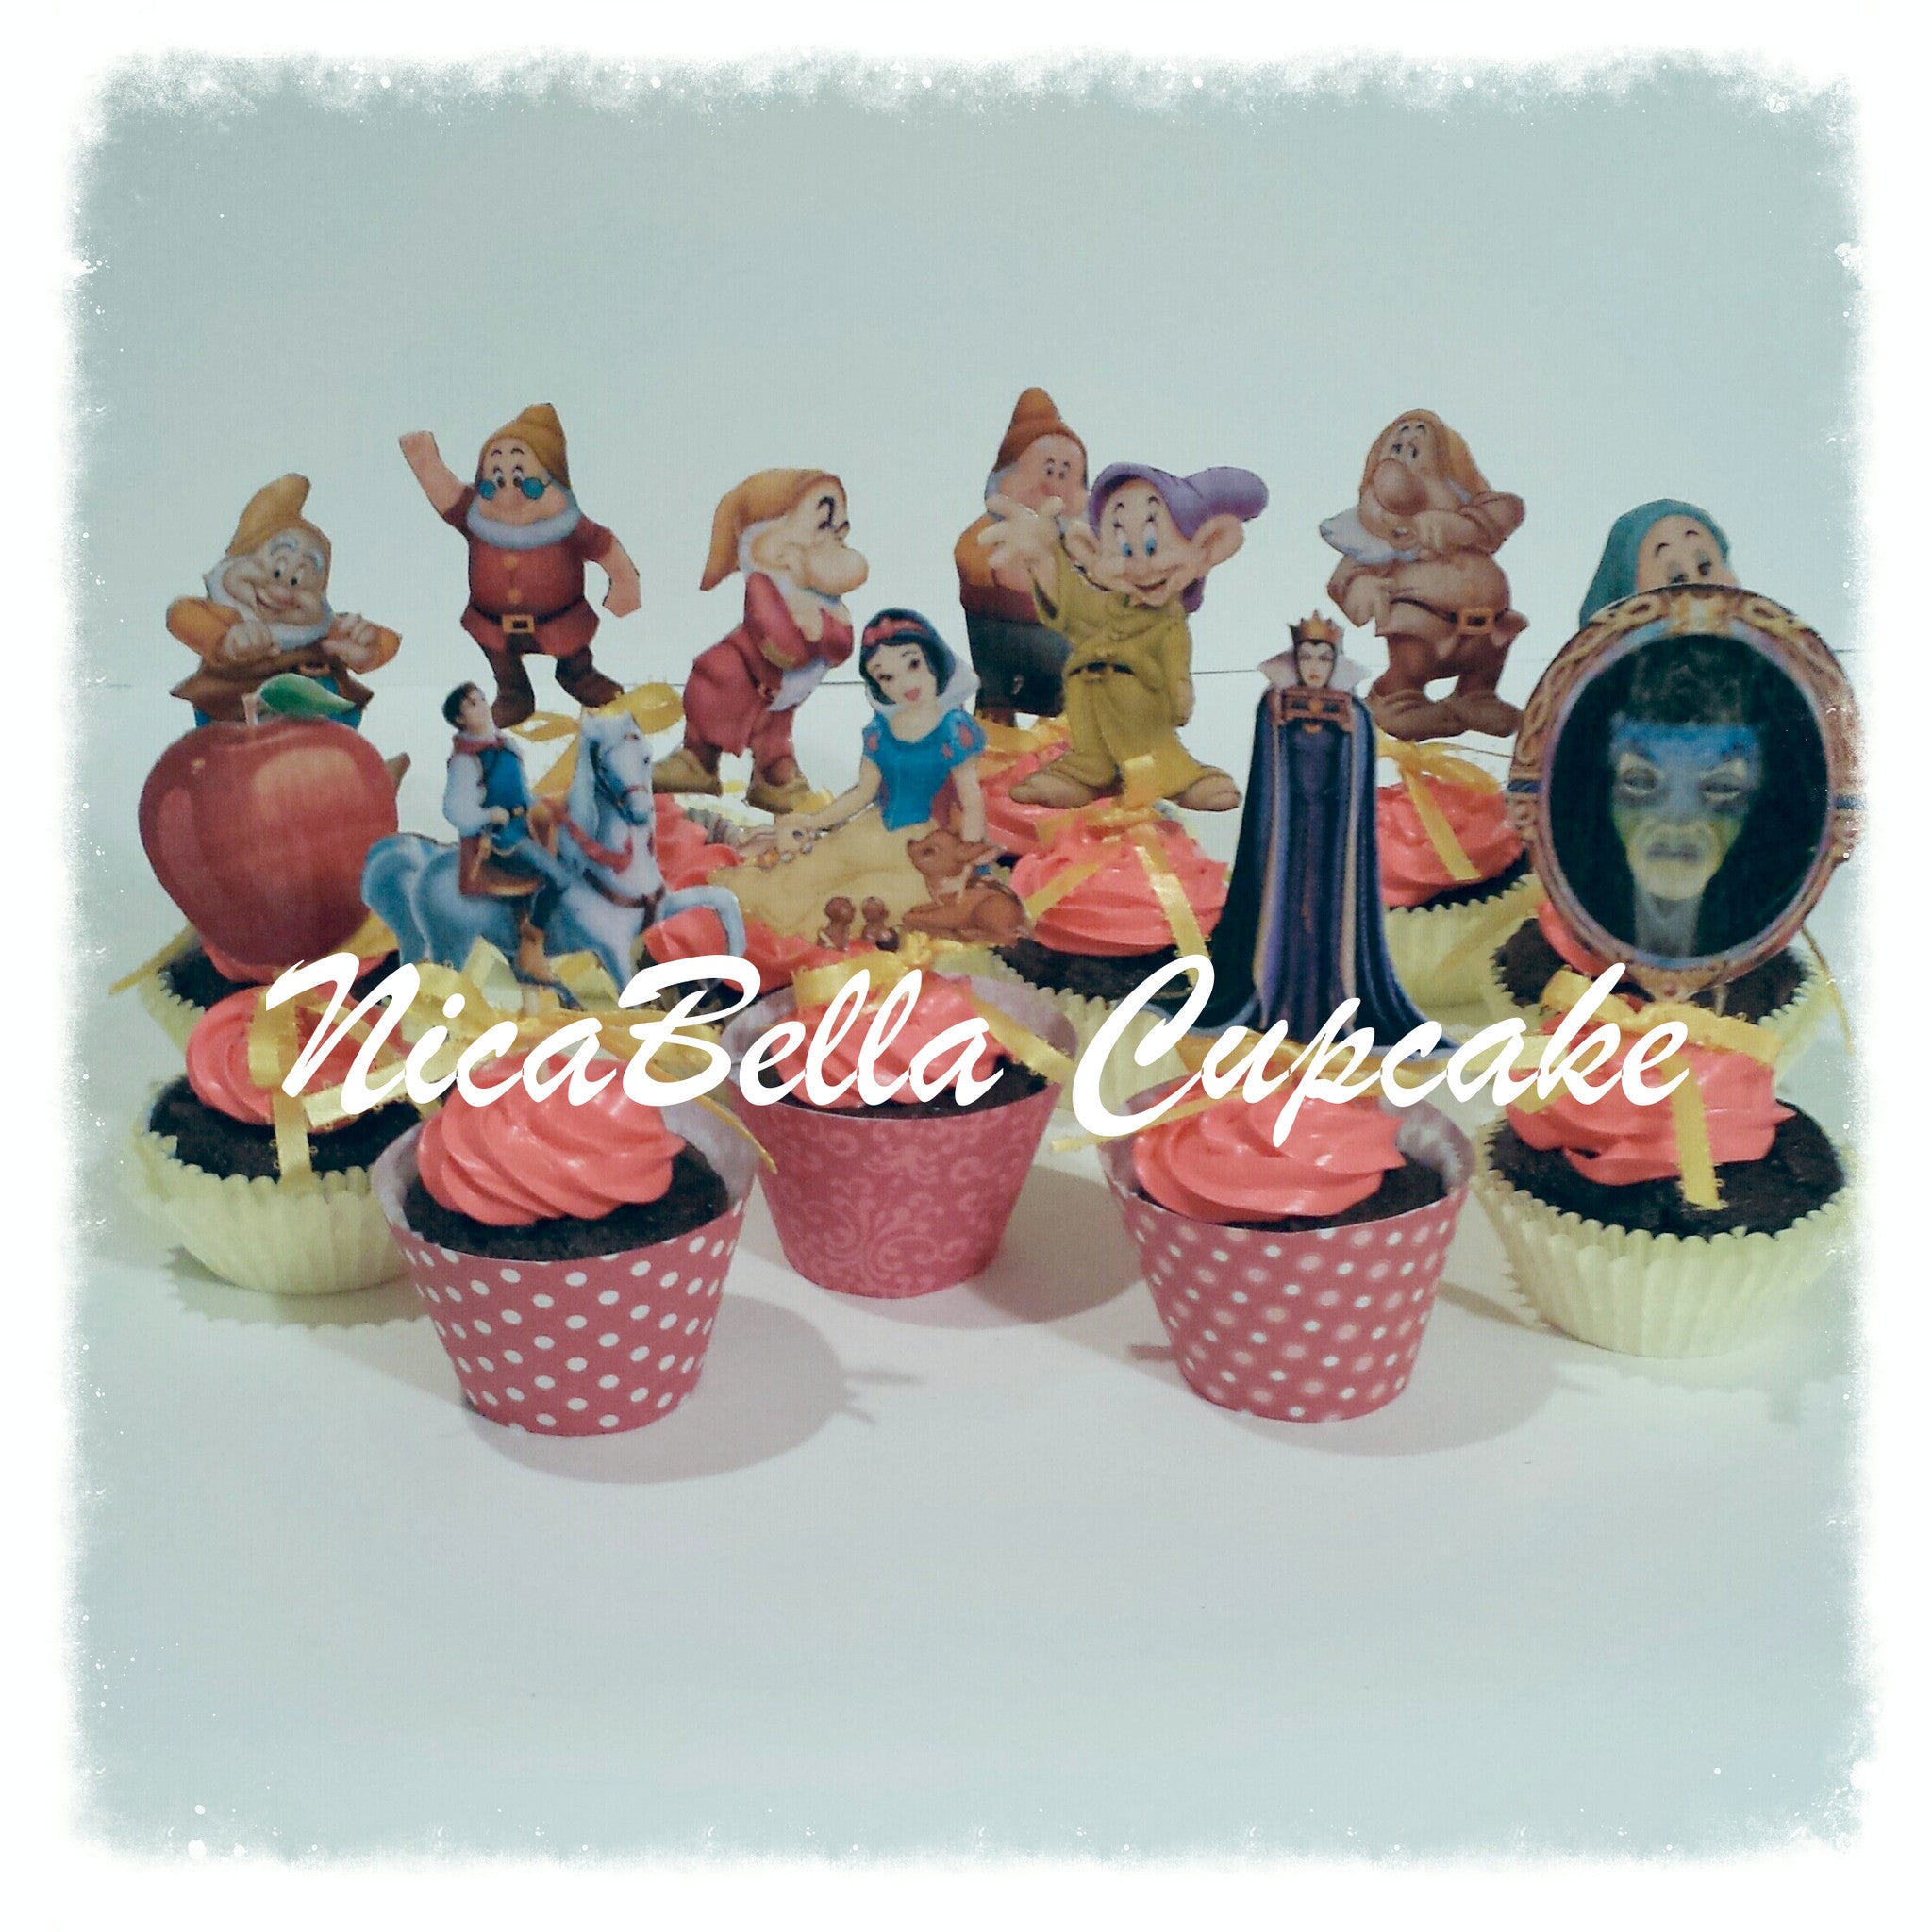 1 Dozen Cupcake Toppers - NicaBella Cupcake Boutique